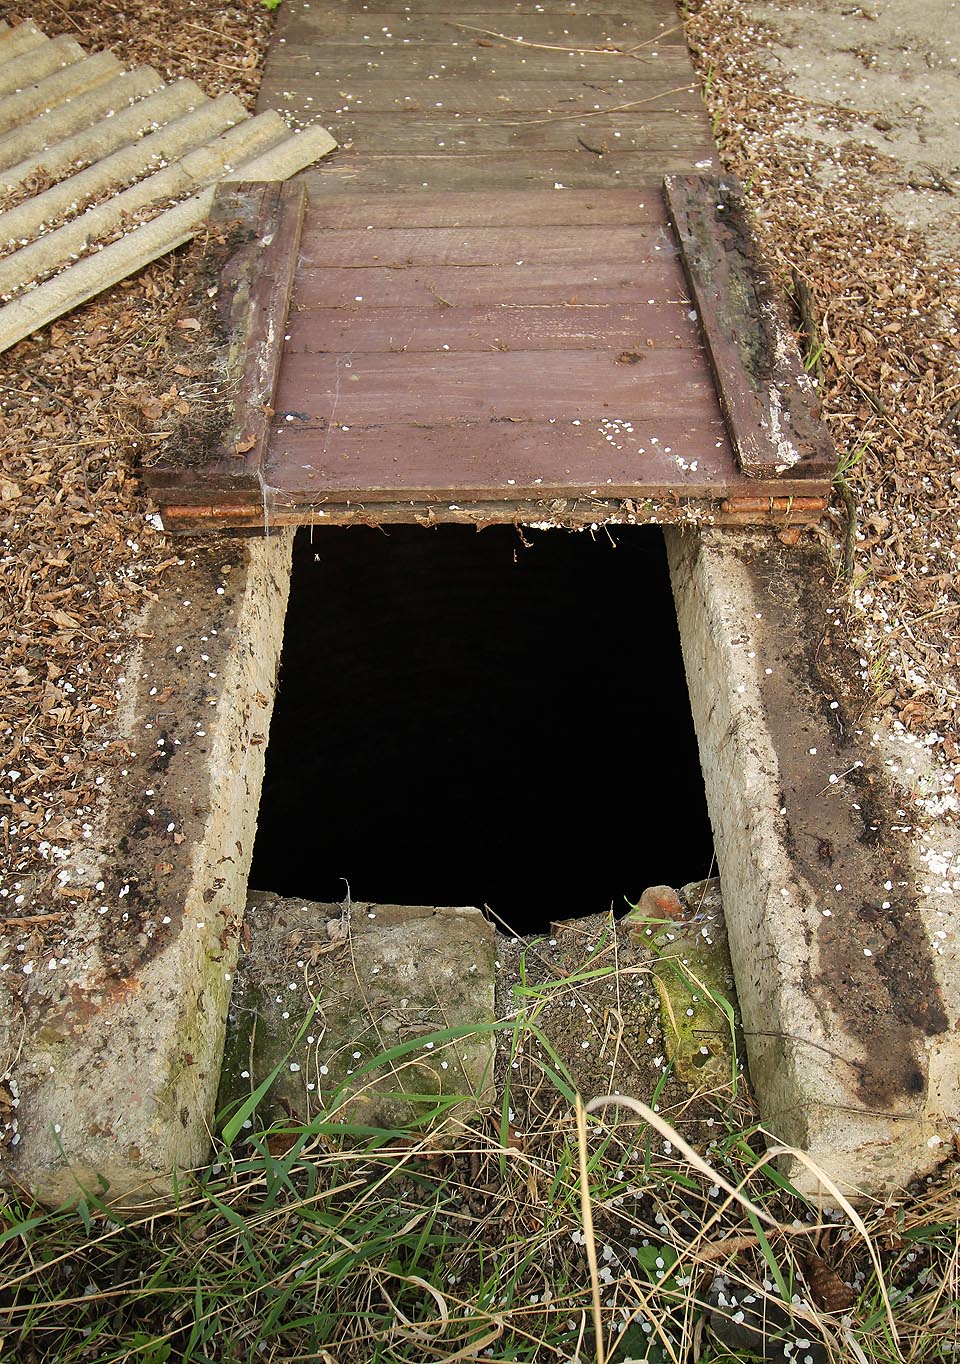 Pod víkem lze spatřit cihlovou obrubeň a tmavý otvor, ze kterého se line chladný a vlhký vzduch. Tušit je pořádná hloubka neznámé podzemní prostory.